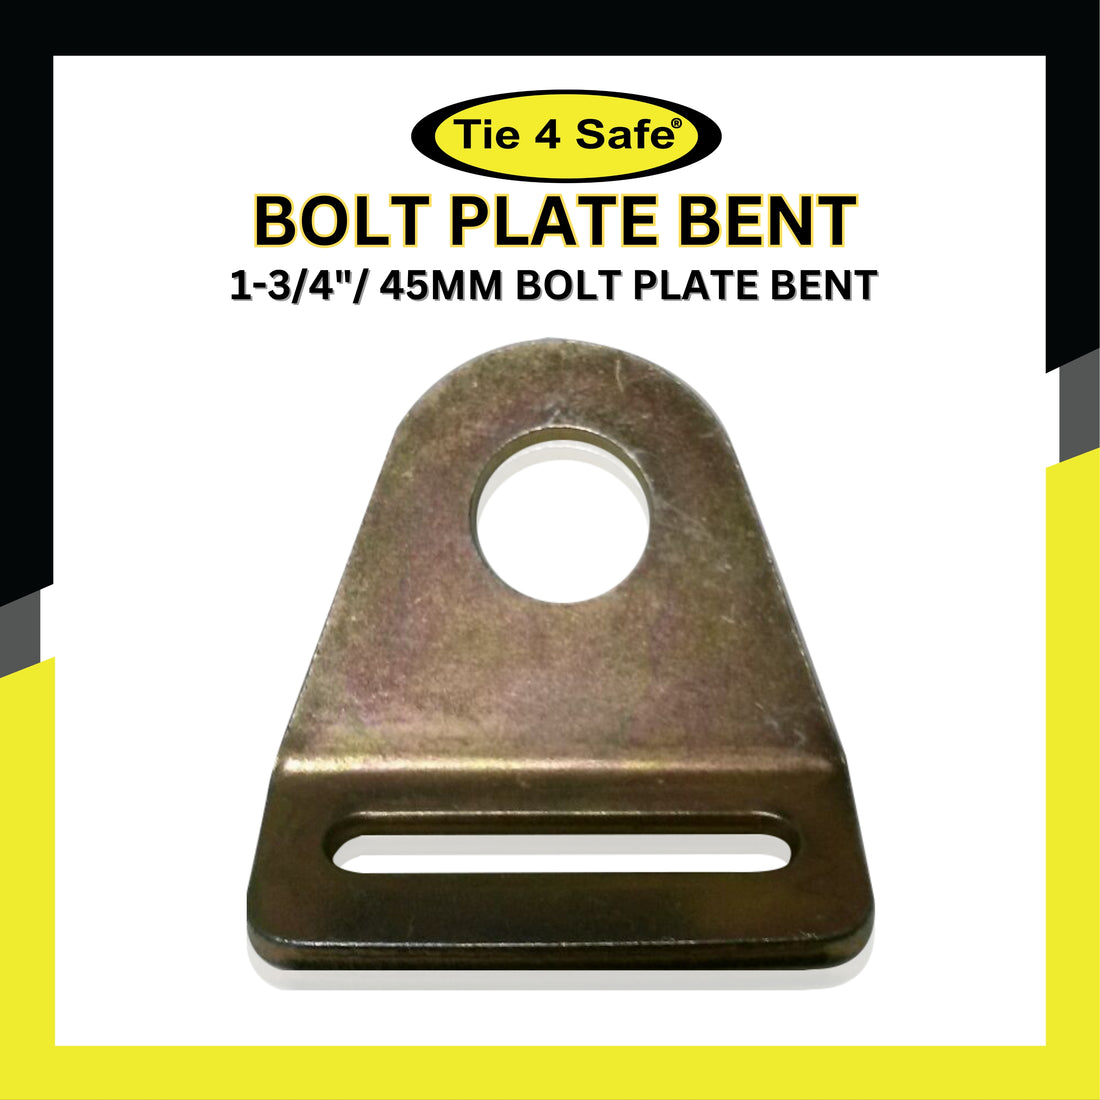 1-3/4"/ 45mm Bolt Plate Bent